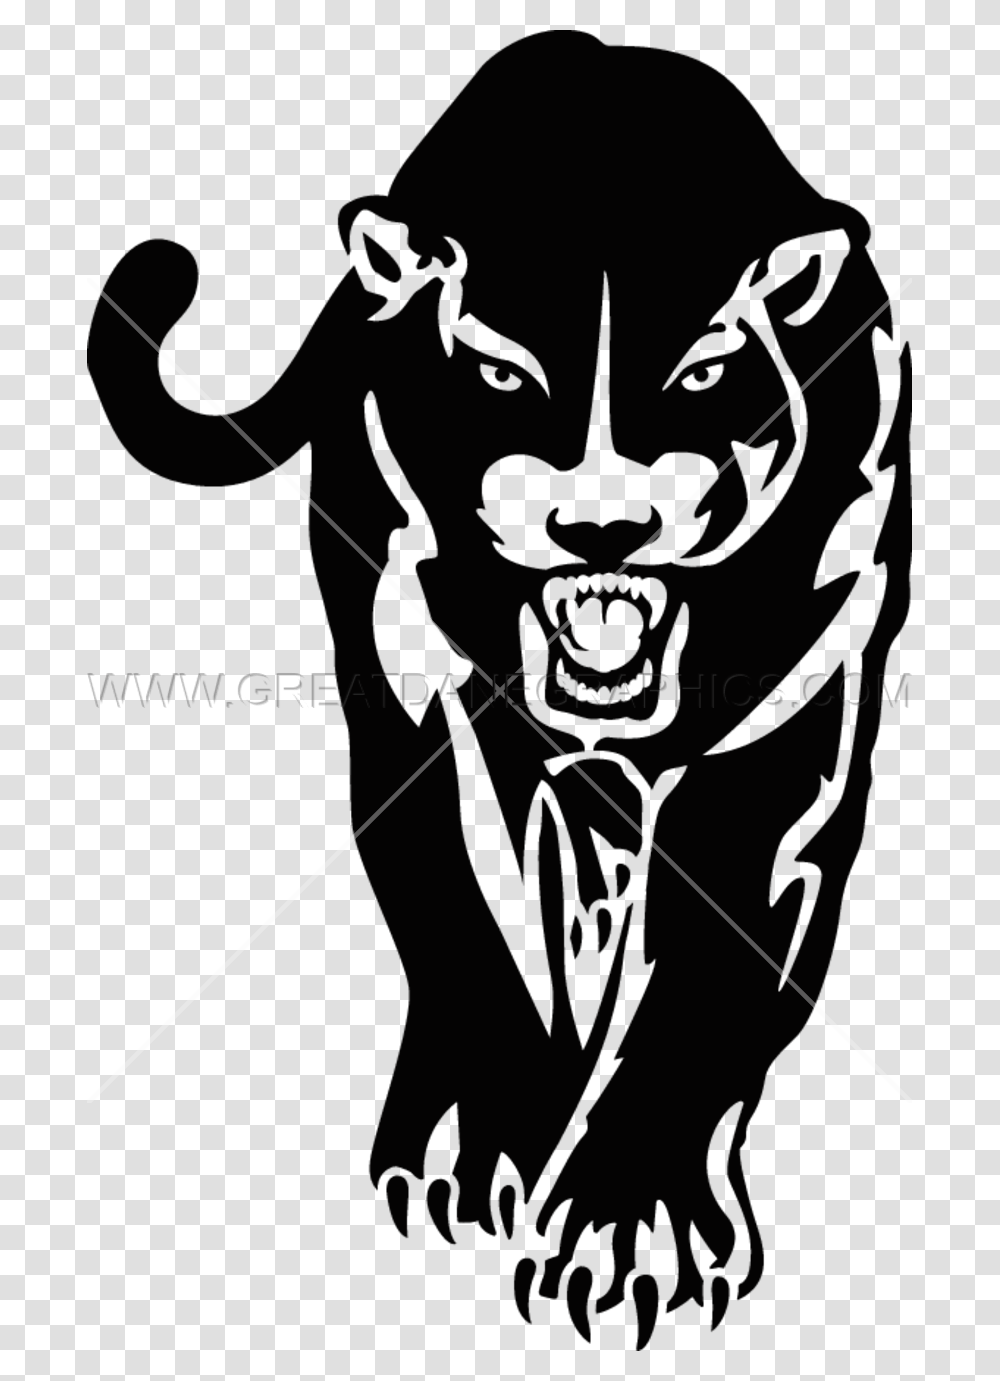 Black Panther Jaguar Cougar Stencil Clip Art Cute Black Panther Cartoon, Person, Sport, Bow, Archery Transparent Png